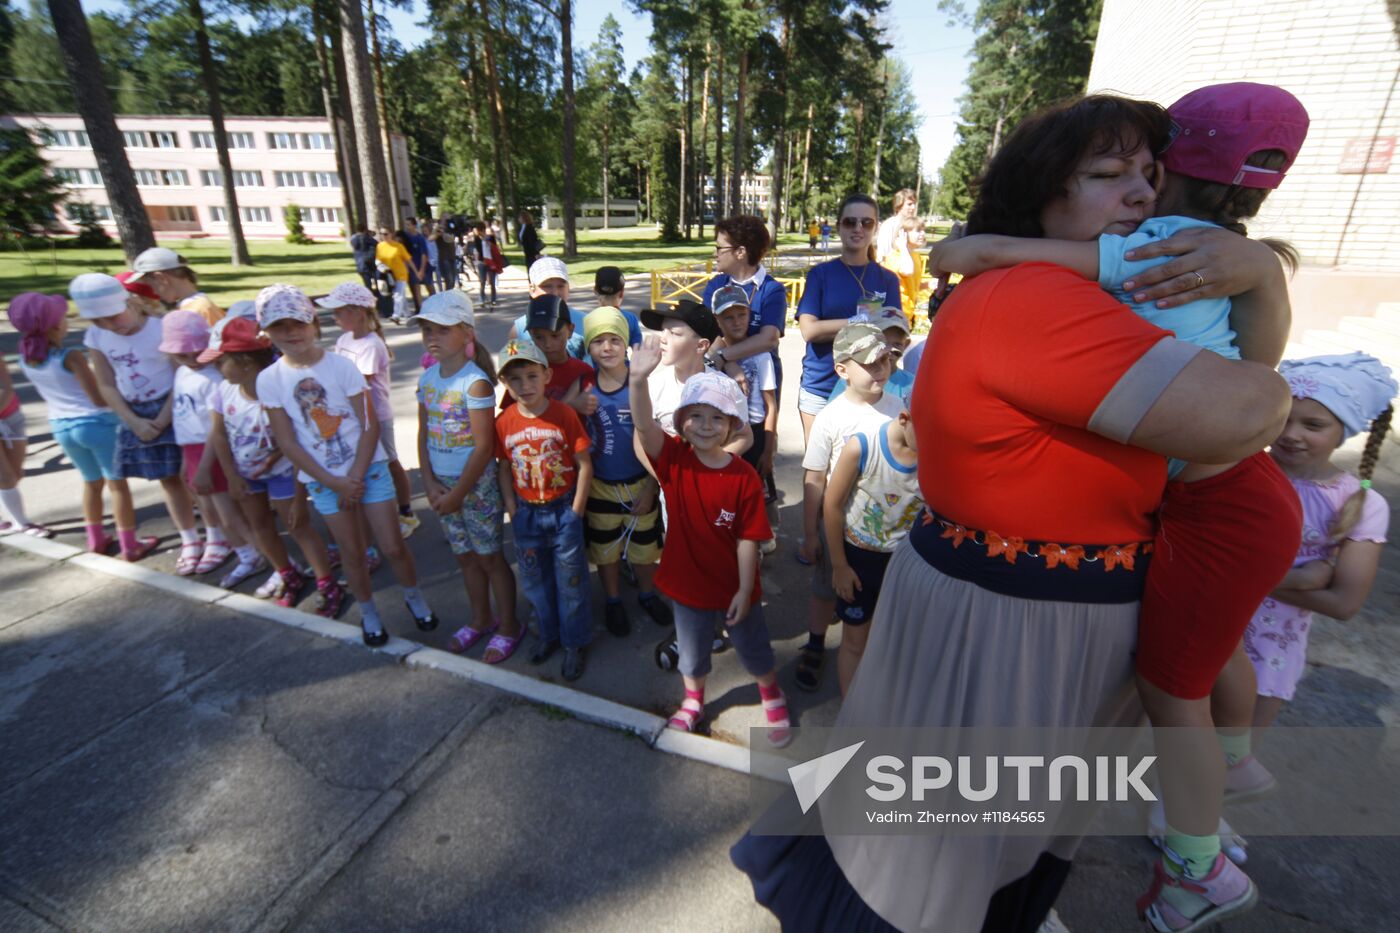 Children's summer camps in Leningrad Region